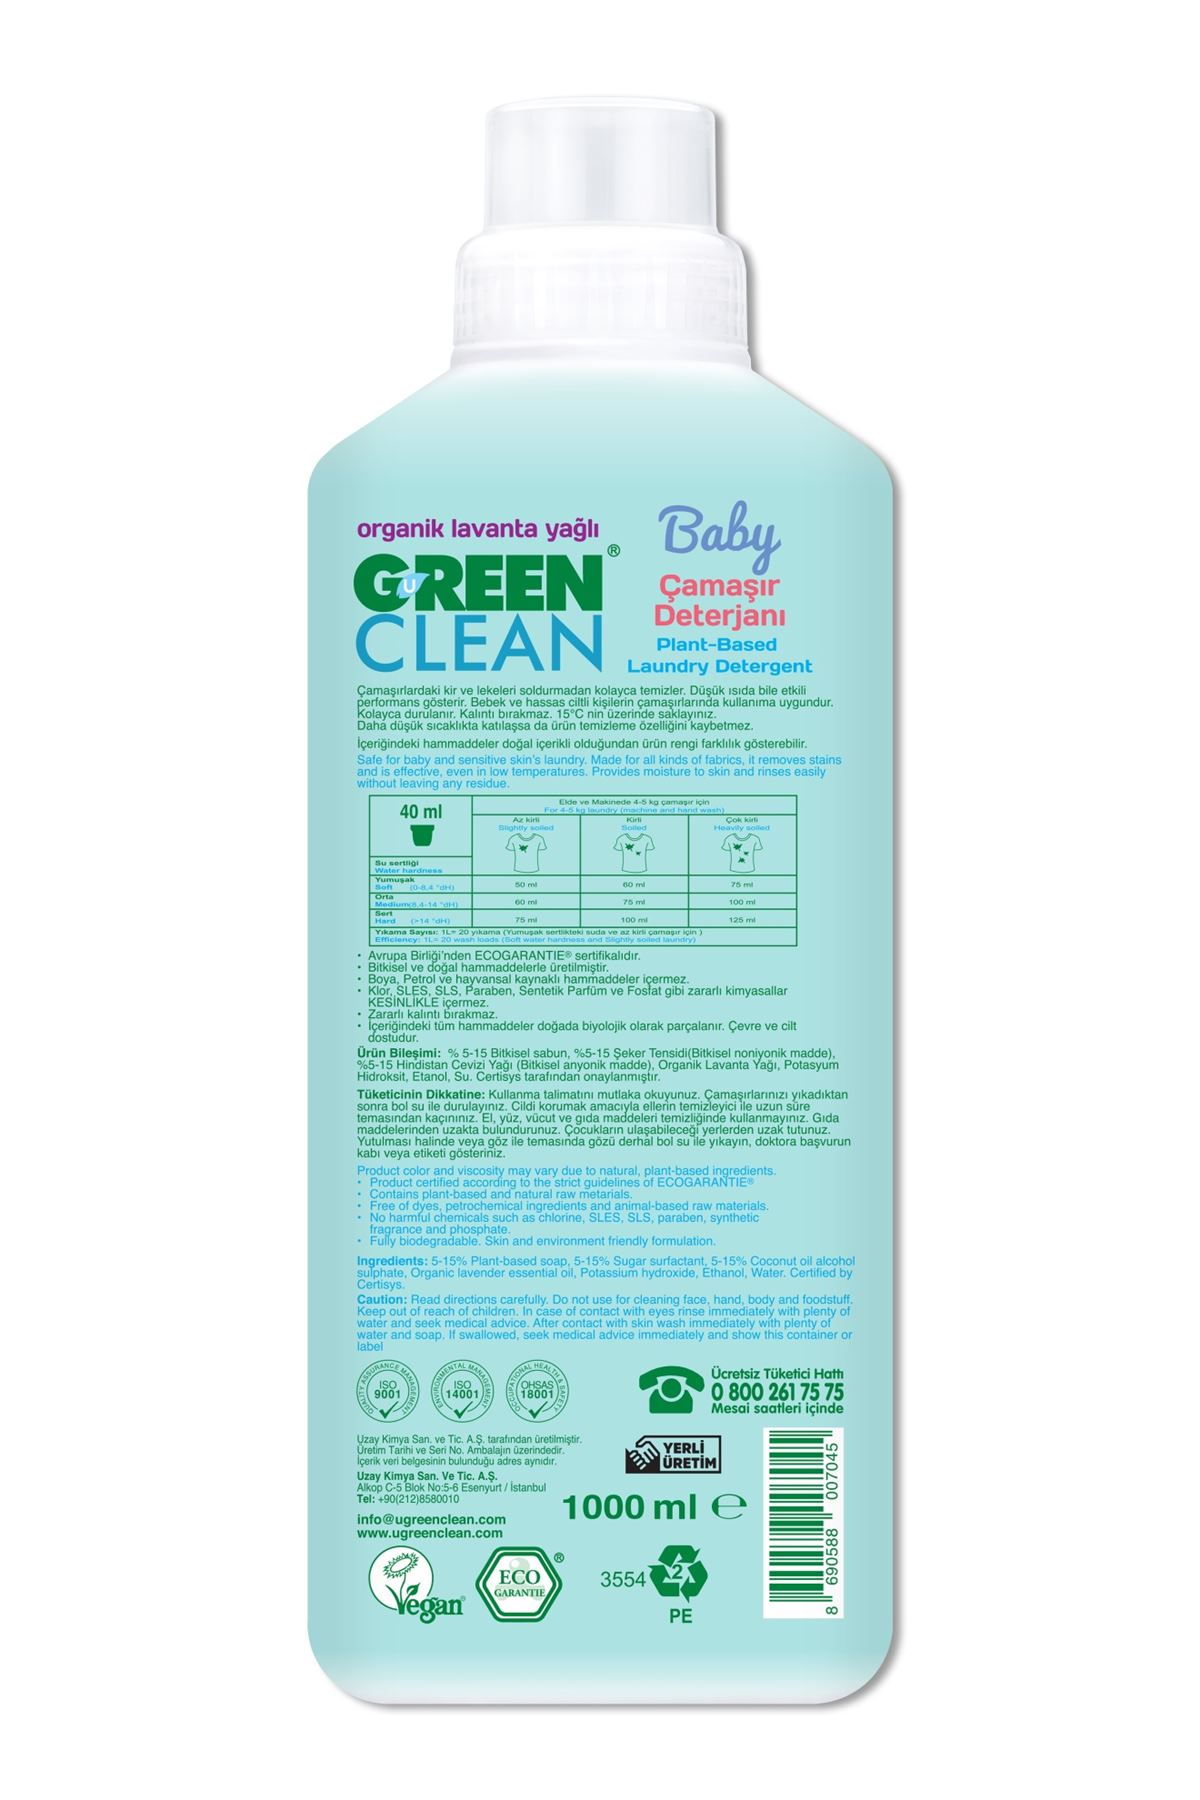 Green Clean Baby Bitkisel Çamaşır Deterjanı 1000ml